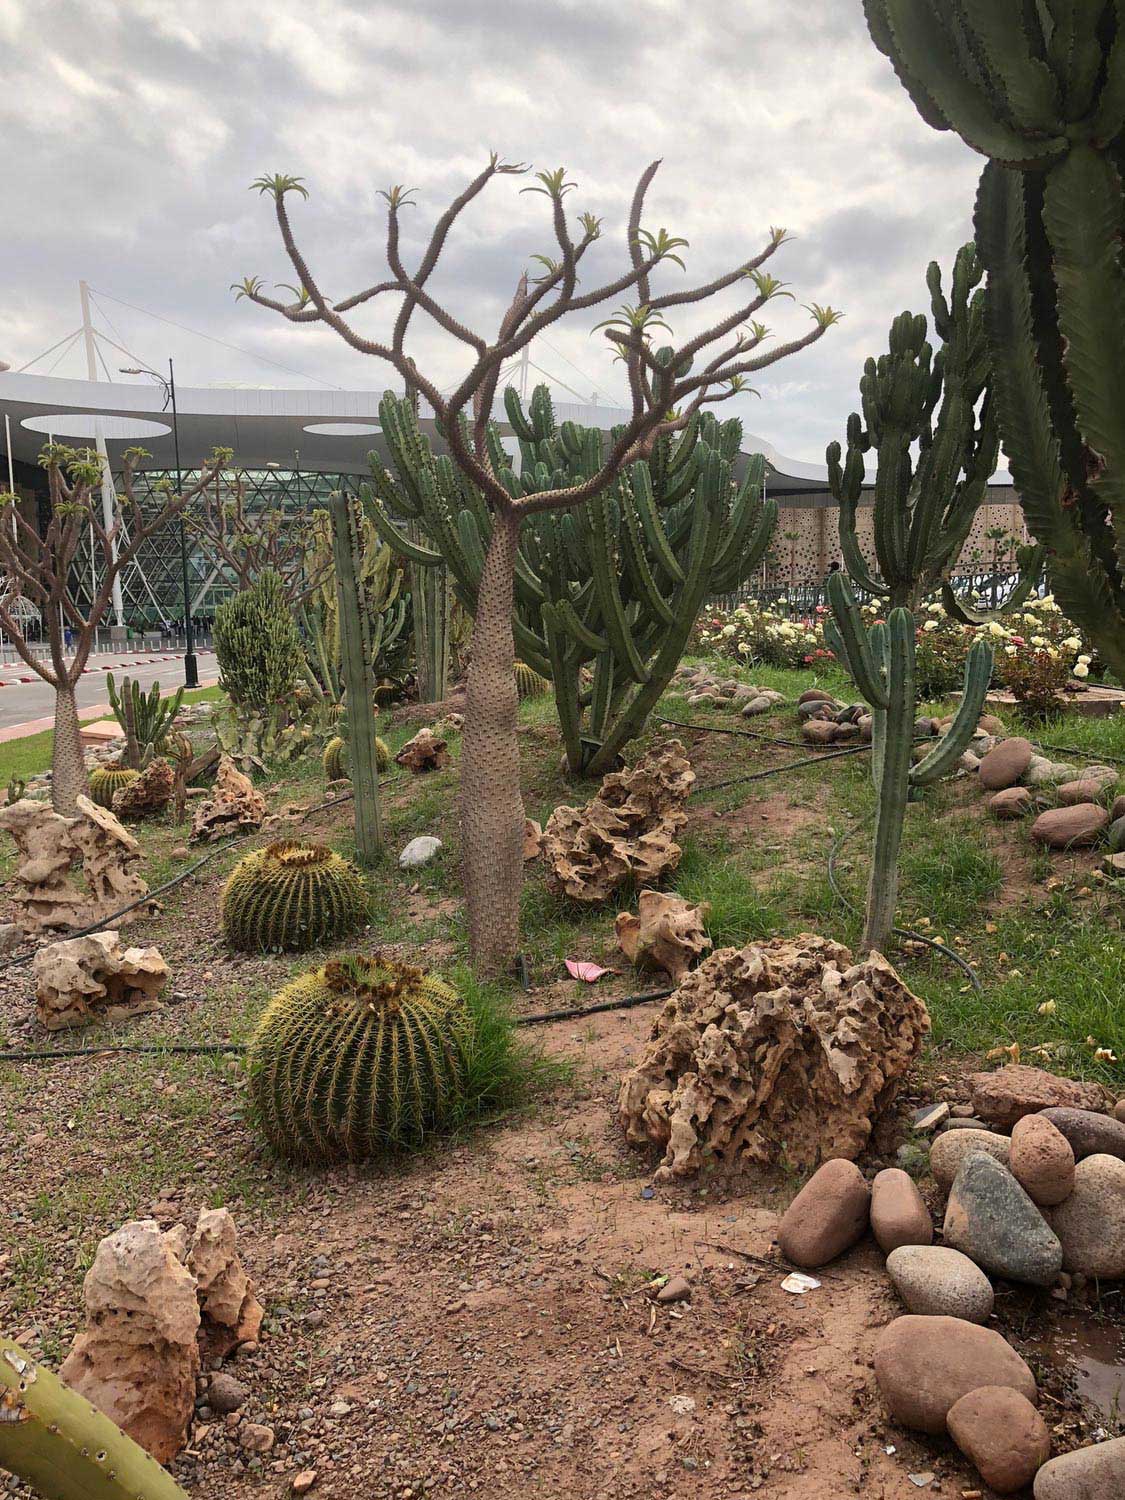 View through the cactus garden toward the main entrance